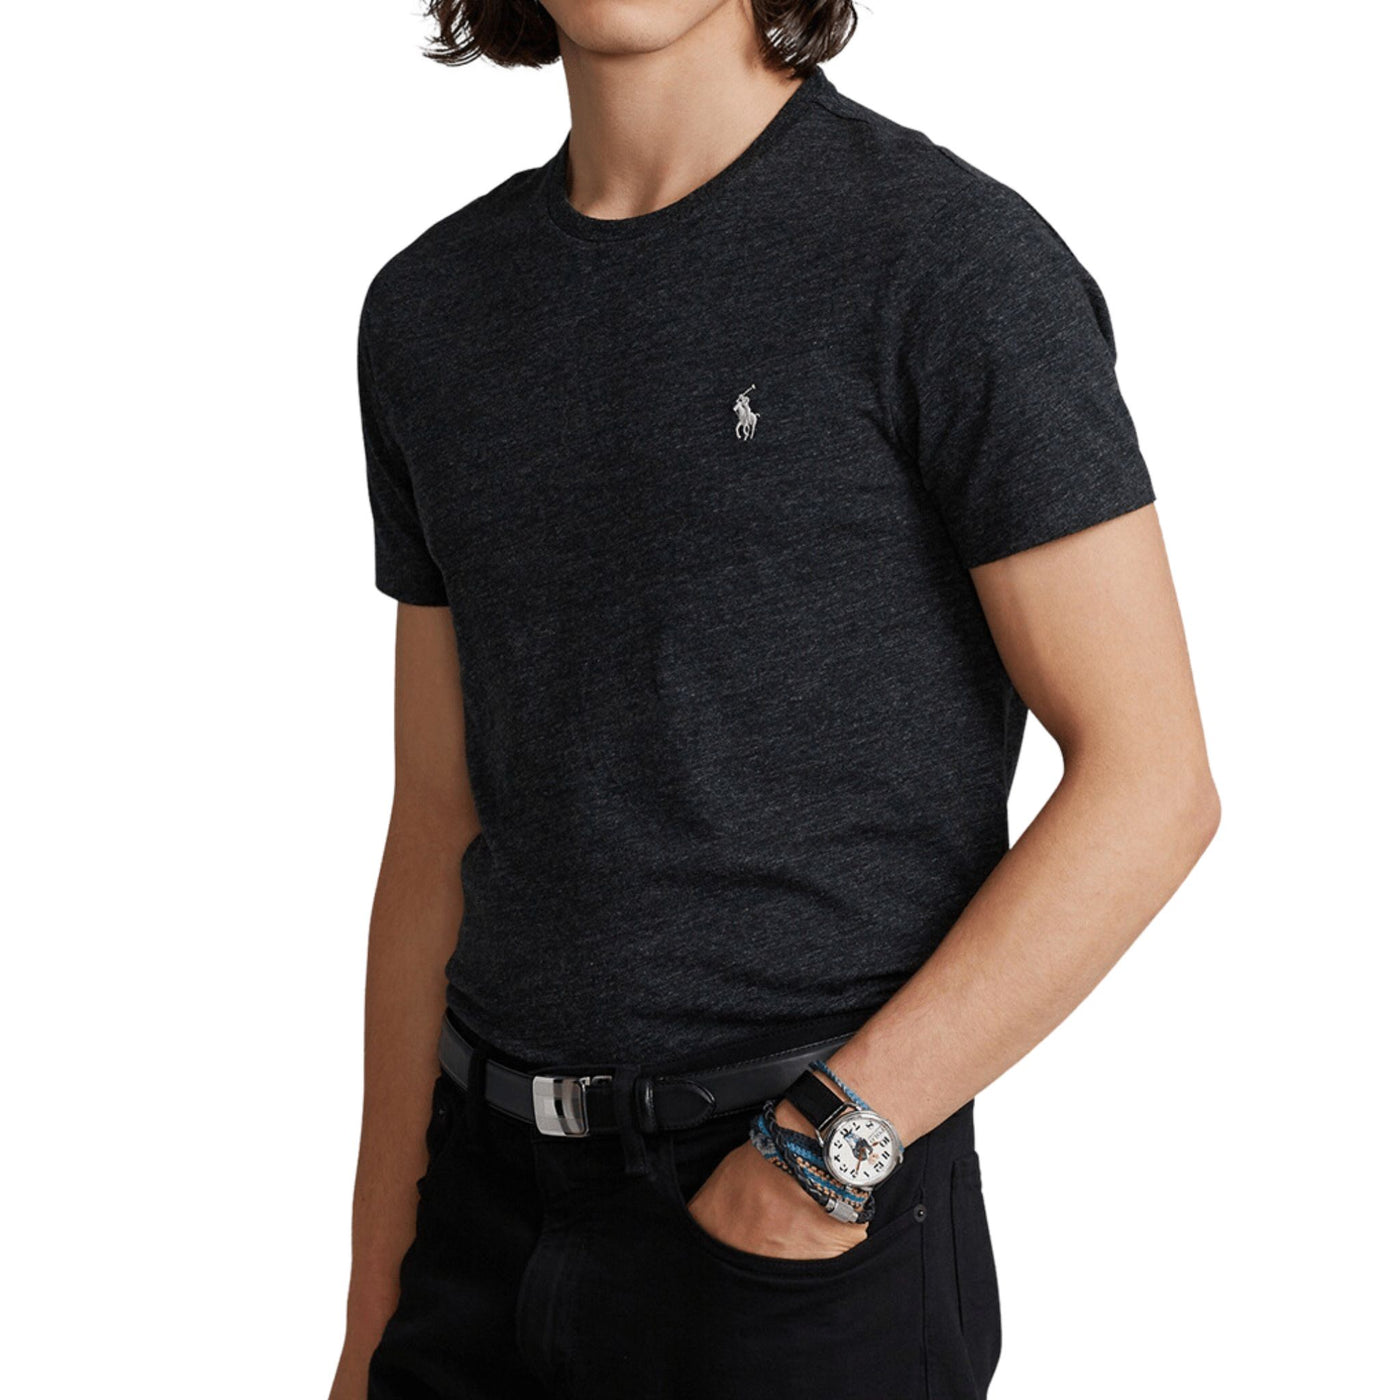 Immagine frontale T-shirt grigia da uomo manica corta con logo Polo Ralph Lauren ricamato tono su tono con scollo a girocollo